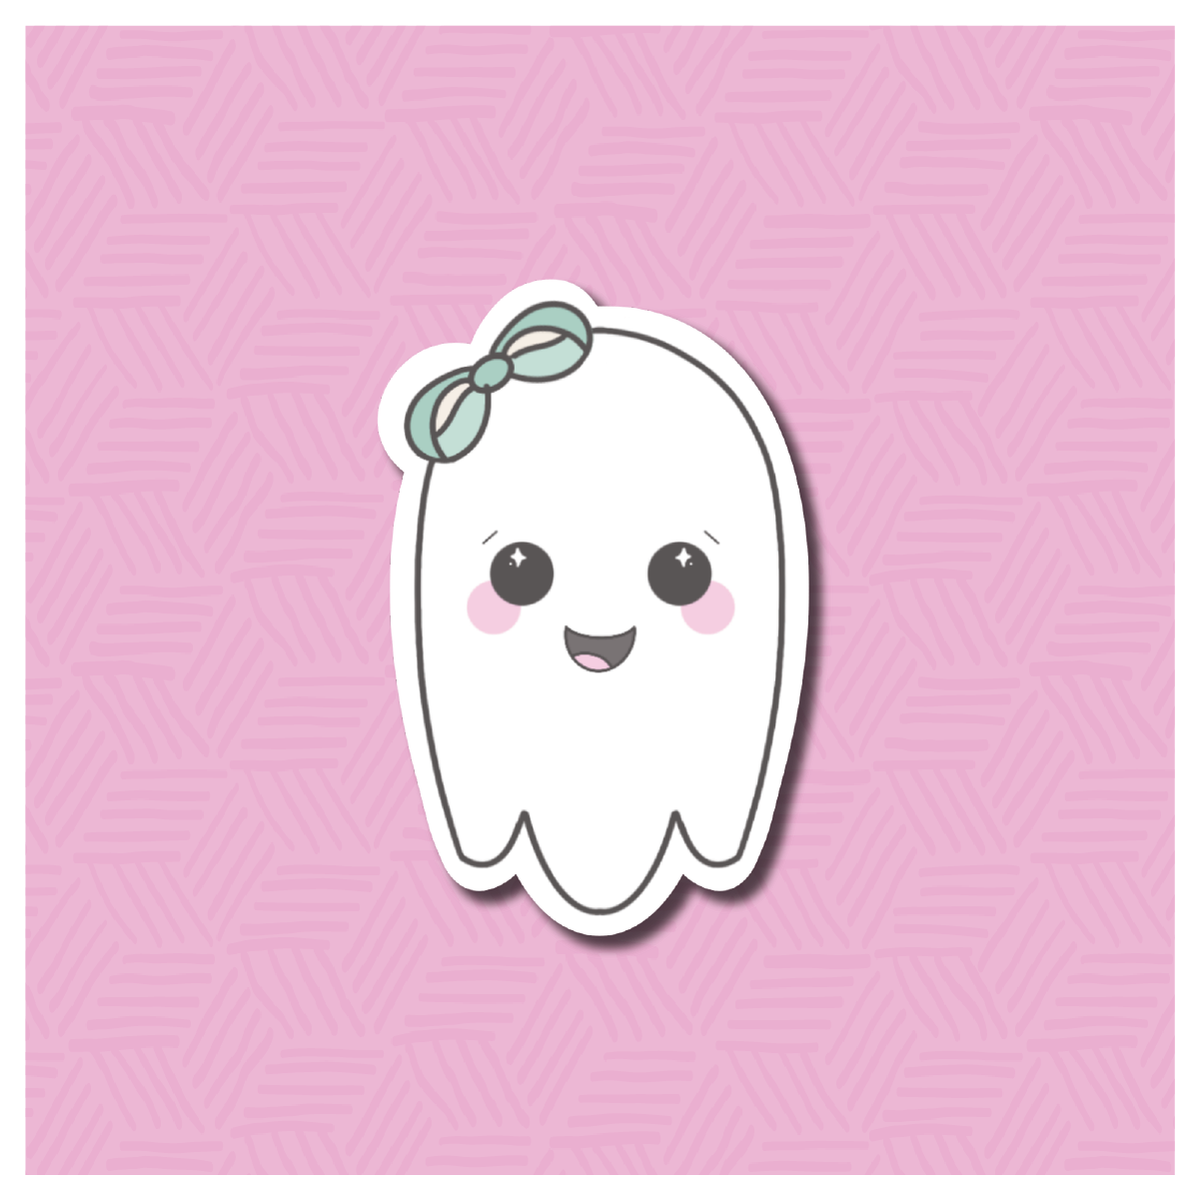 Spooky Cute Girly Ghost Digital Sticker File